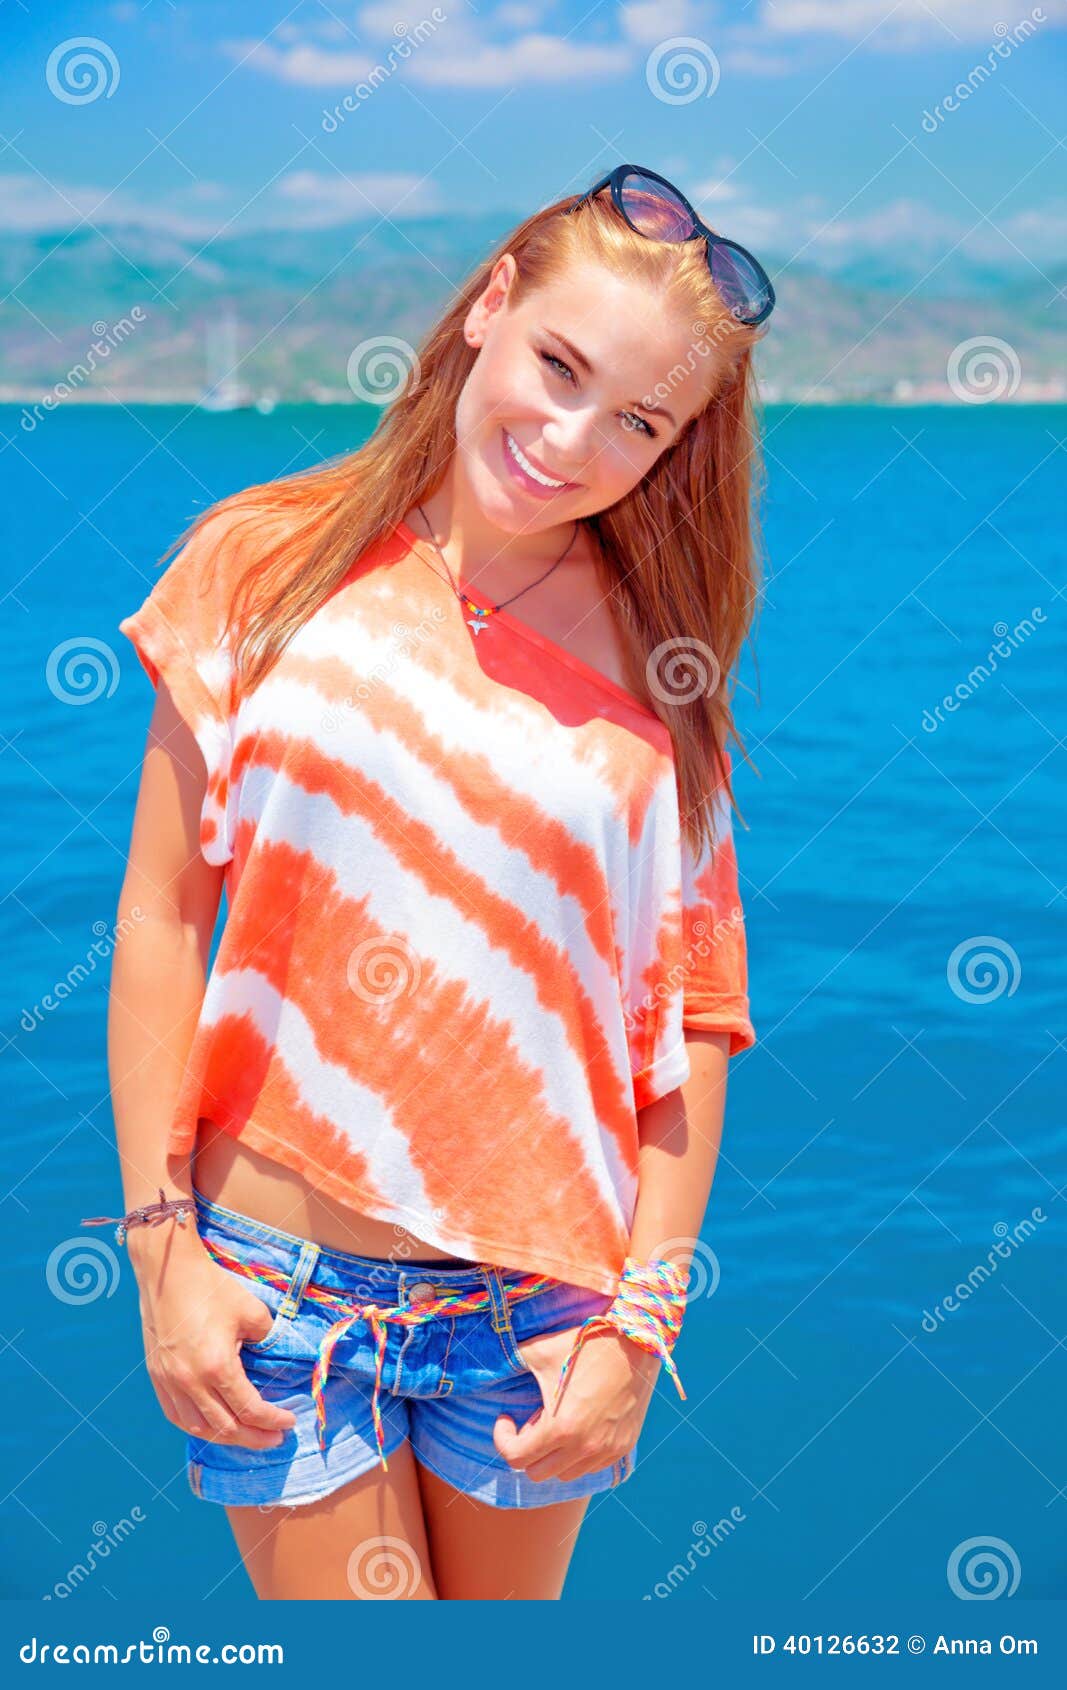 Adolescente lindo el vacaciones de verano. Retrato de la muchacha adolescente linda que se coloca en fondo azul del mar, teniendo la diversión en la playa, vacaciones de verano y concepto de los días de fiesta